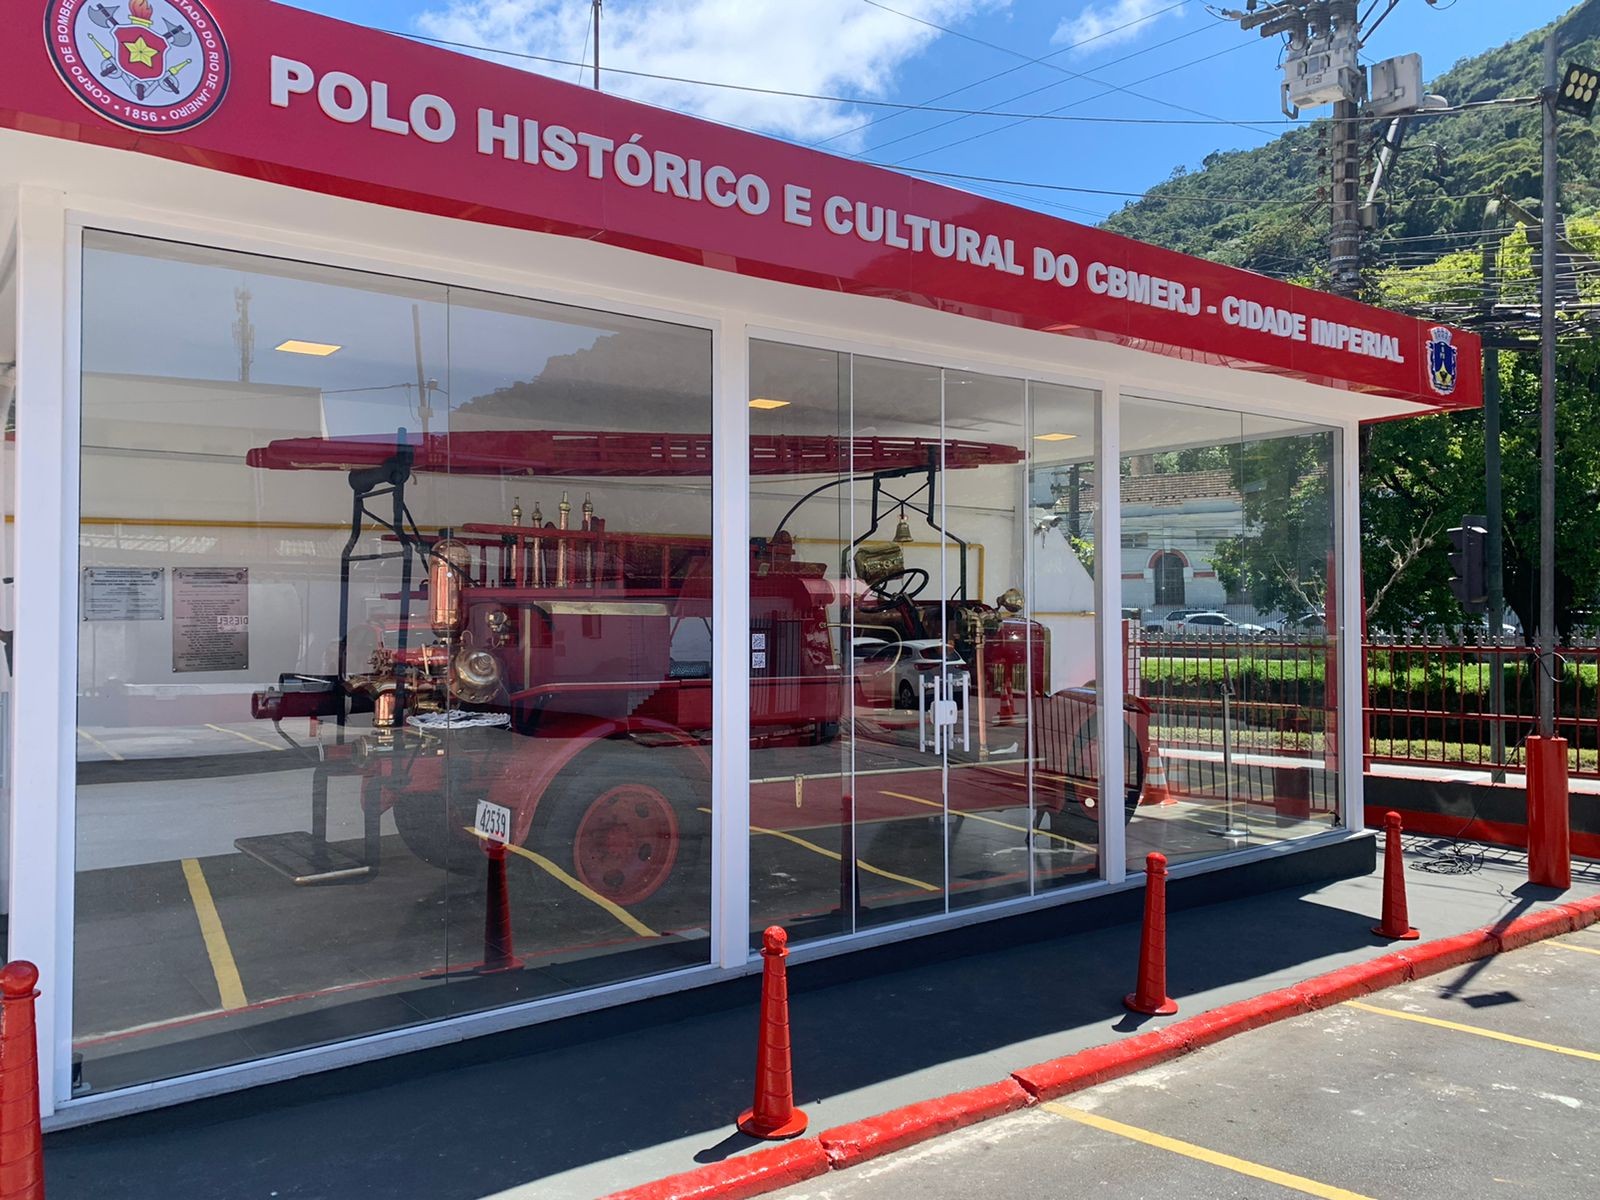 Corpo de Bombeiros de Petrópolis, RJ, inaugura Polo Histórico e Cultural e expõe viatura inglesa de mais de 90 anos